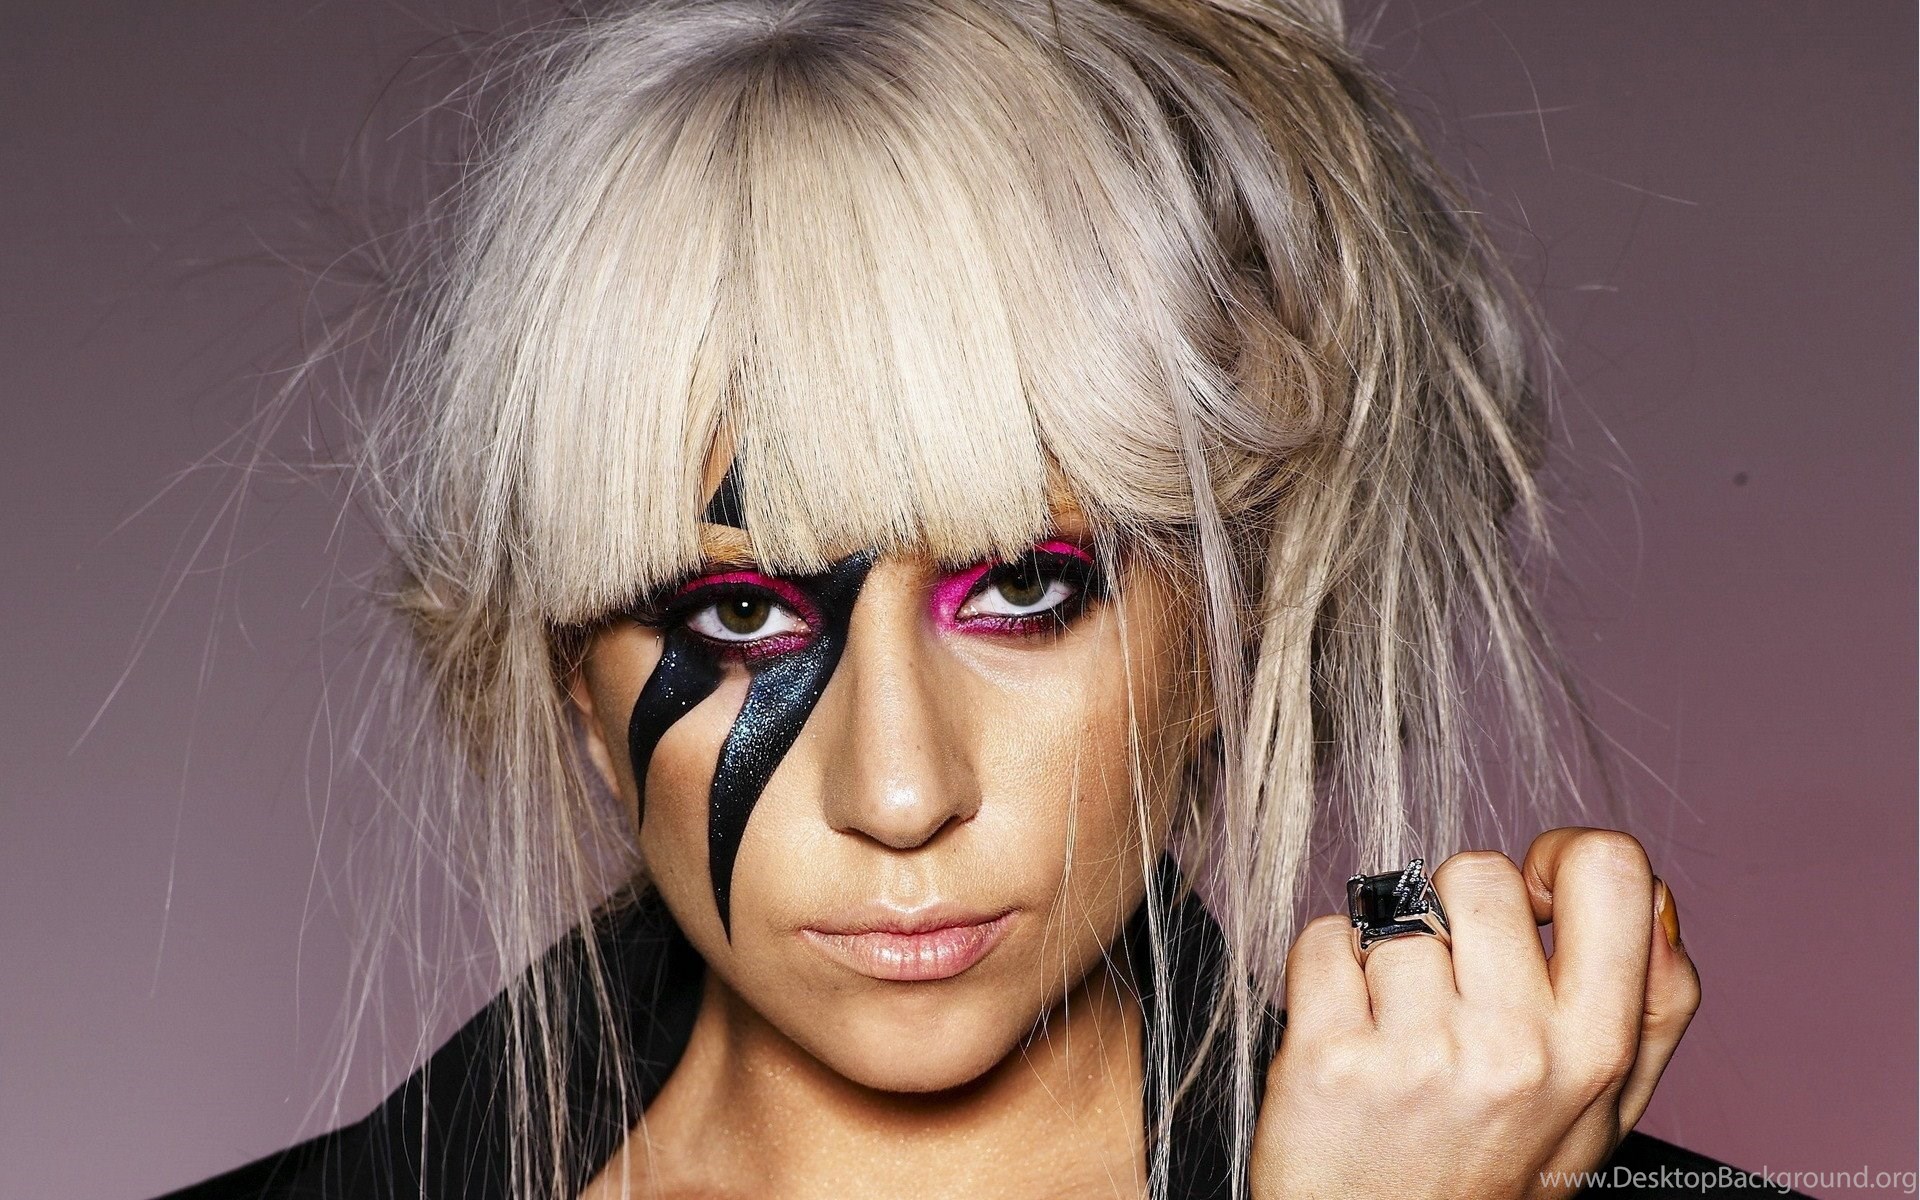 Lady Gaga Fame Monster HDwallpaper4U.com Desktop Background